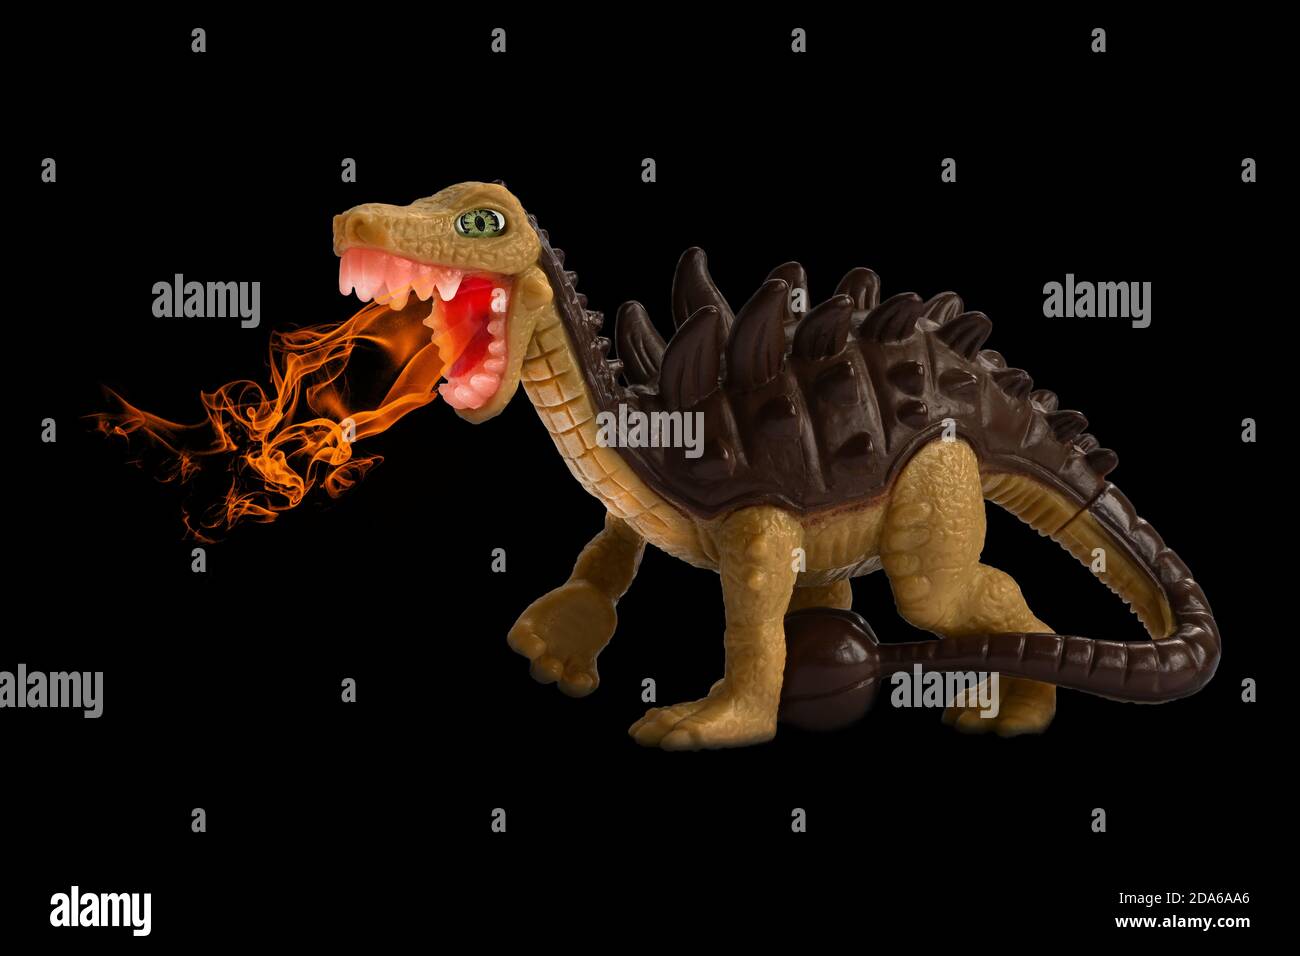 Feuer atmen Spielzeug Dinosaurier. Kinderspielzeug, Tierfigur aus Kunststoff isoliert auf schwarzem Hintergrund, Fantasy-Composite. Dinosaurier mit Spikes und Schwanzschläger Stockfoto